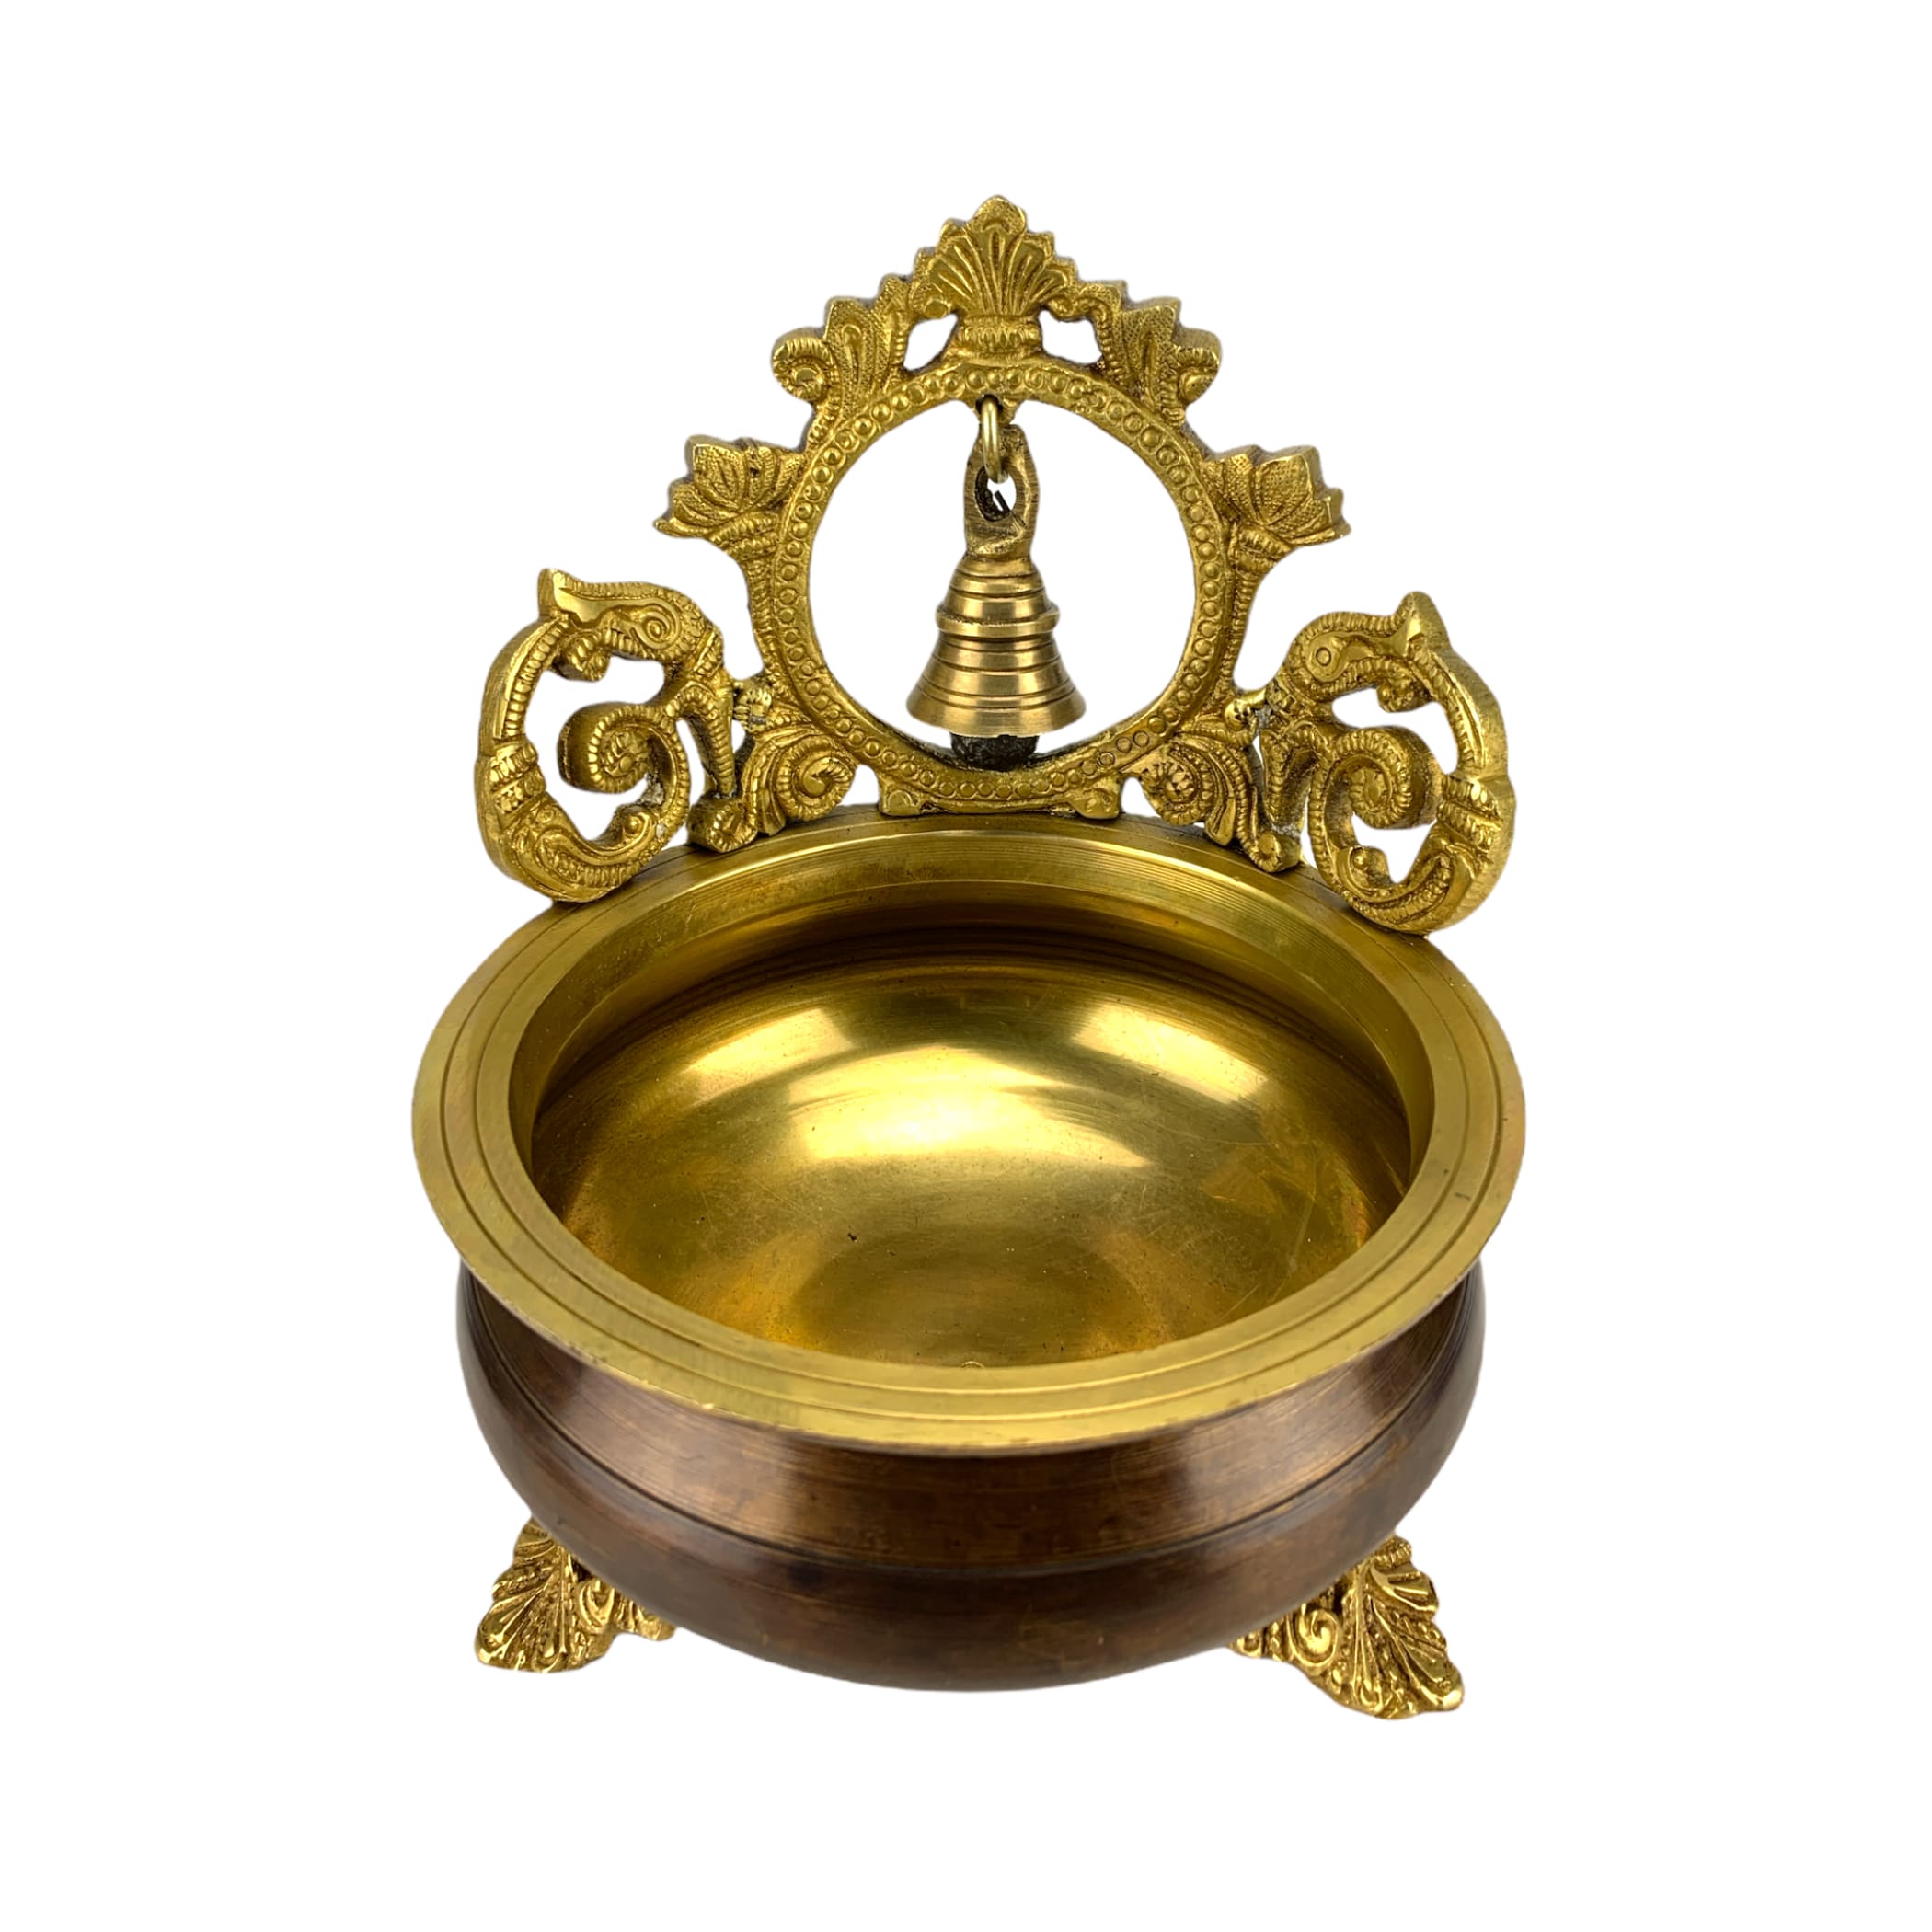 Bell Brass Urli Bowl Center Table Decor Showpiece For